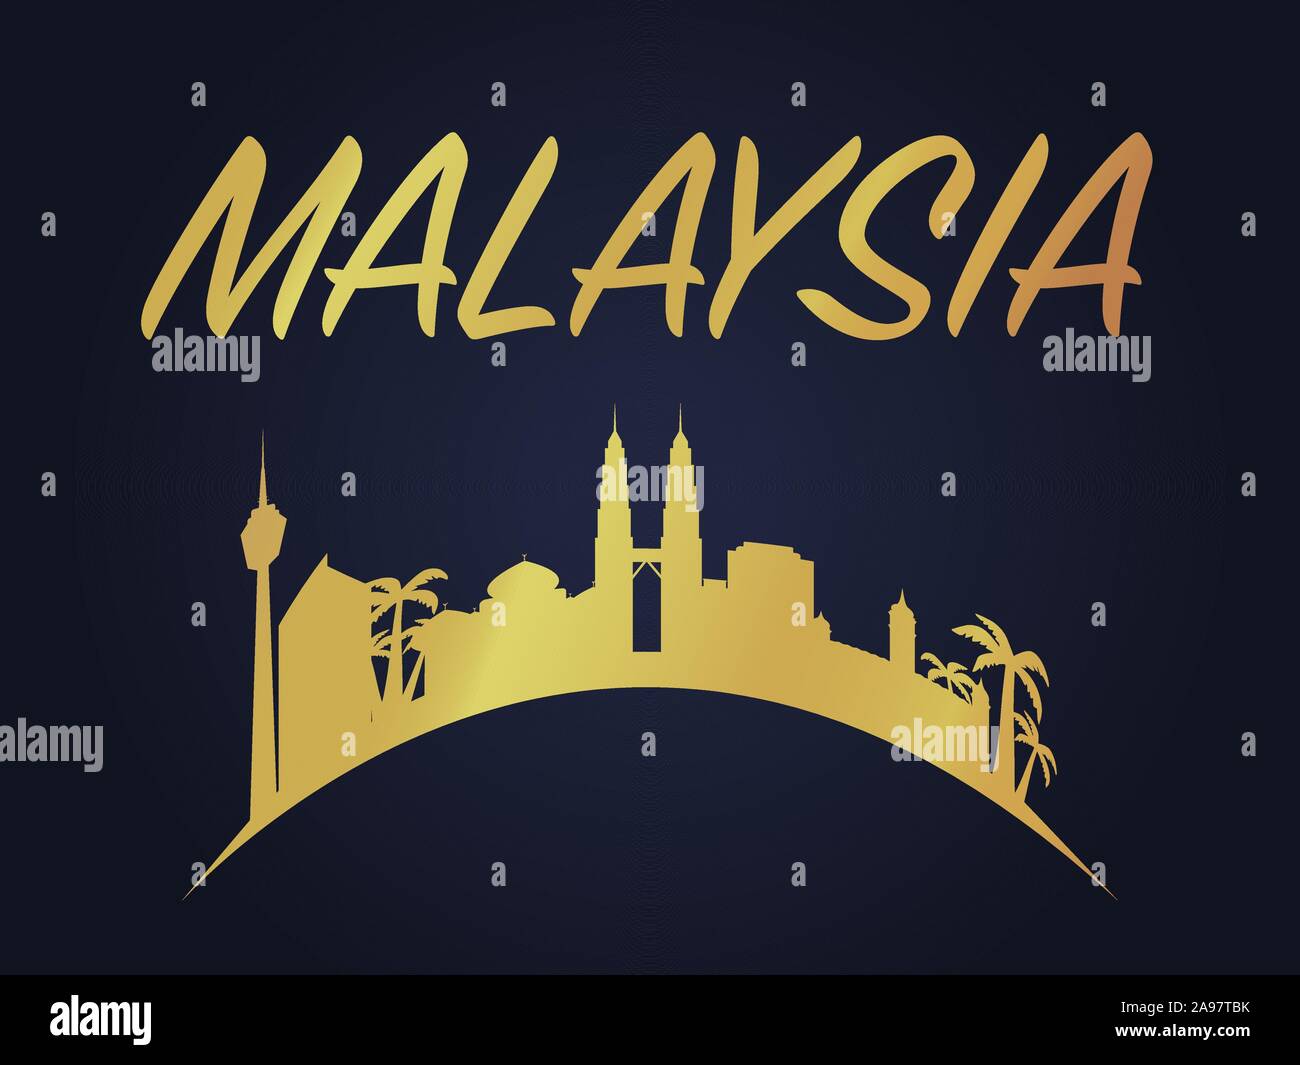 La Malaisie Kuala Lumpur pays ville skyline avec drapeau, vector illustration d'artisanat. Voyage coloré, figuratif, paysage, lieu touristique magnifique ba Illustration de Vecteur